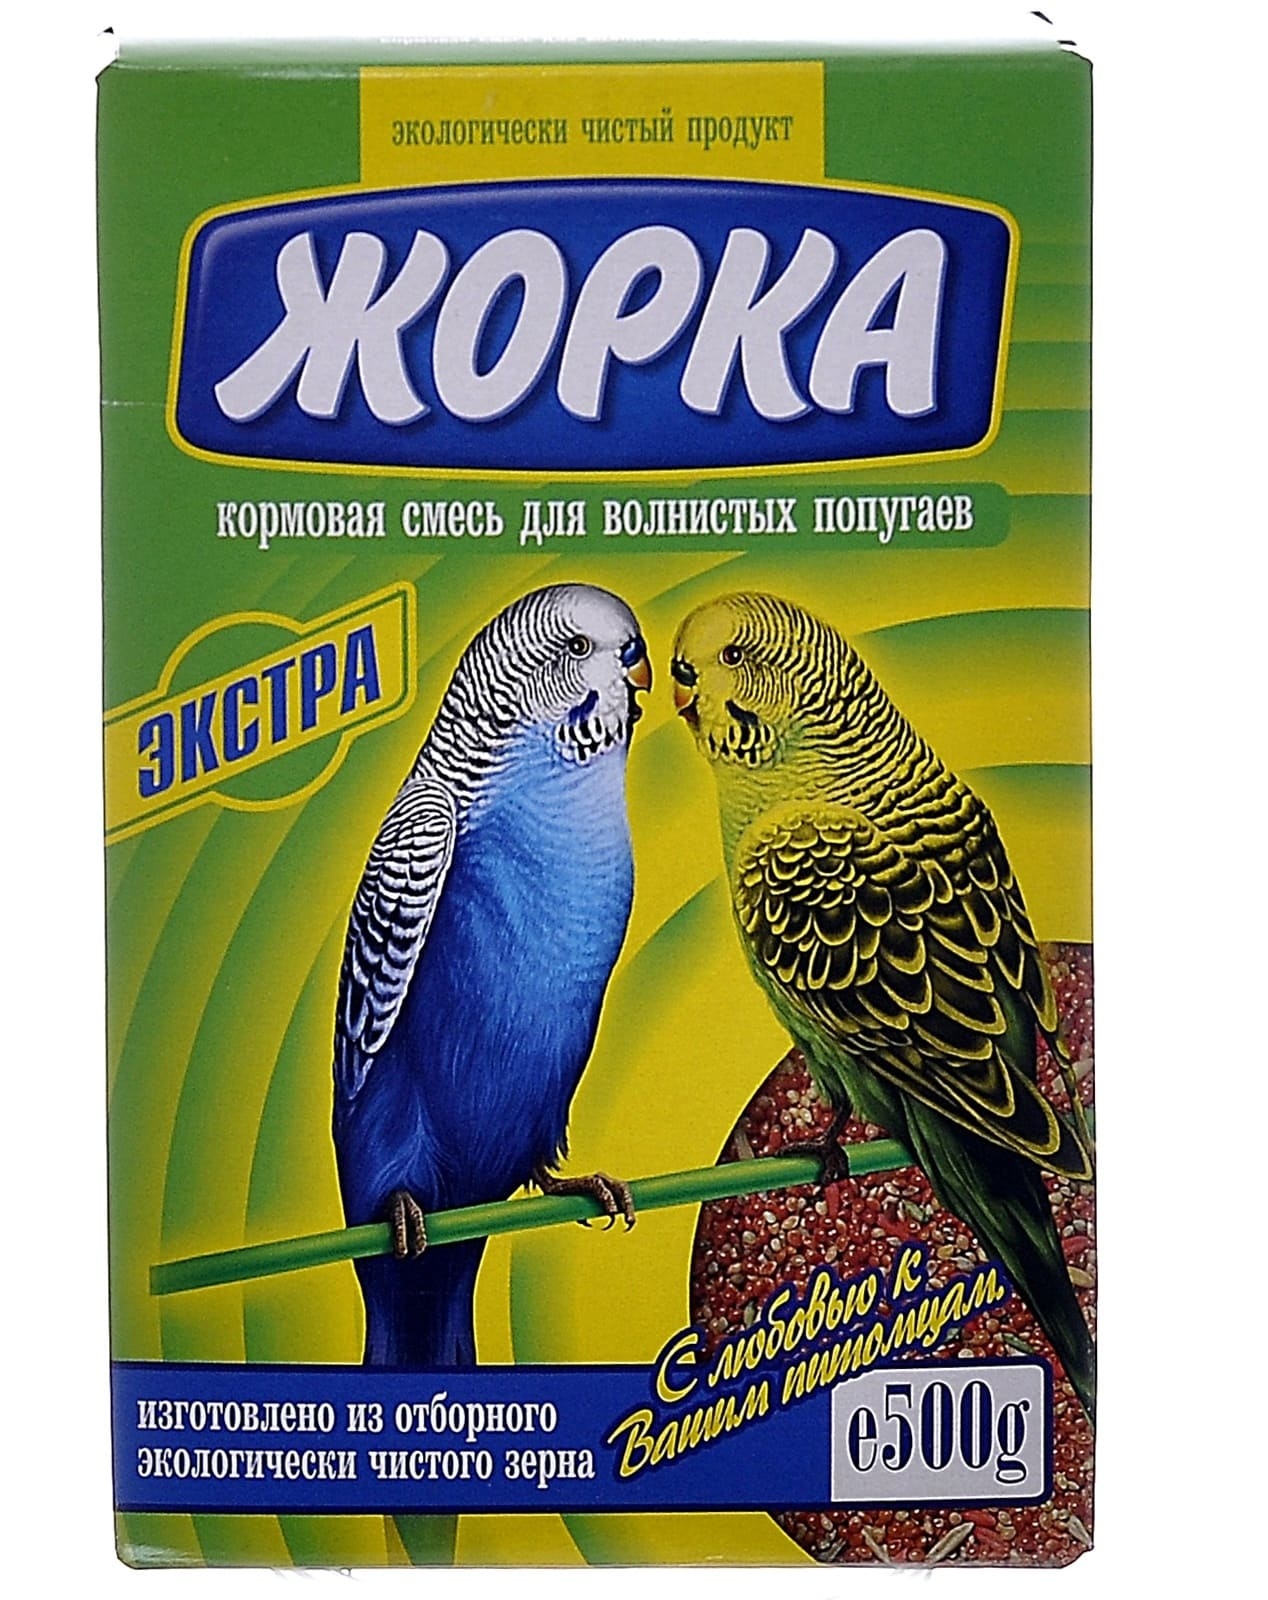 жорка жорка lux для волнистых попугаев экстра пакет 450 г Жорка Жорка для волнистых попугаев Экстра (500 г)